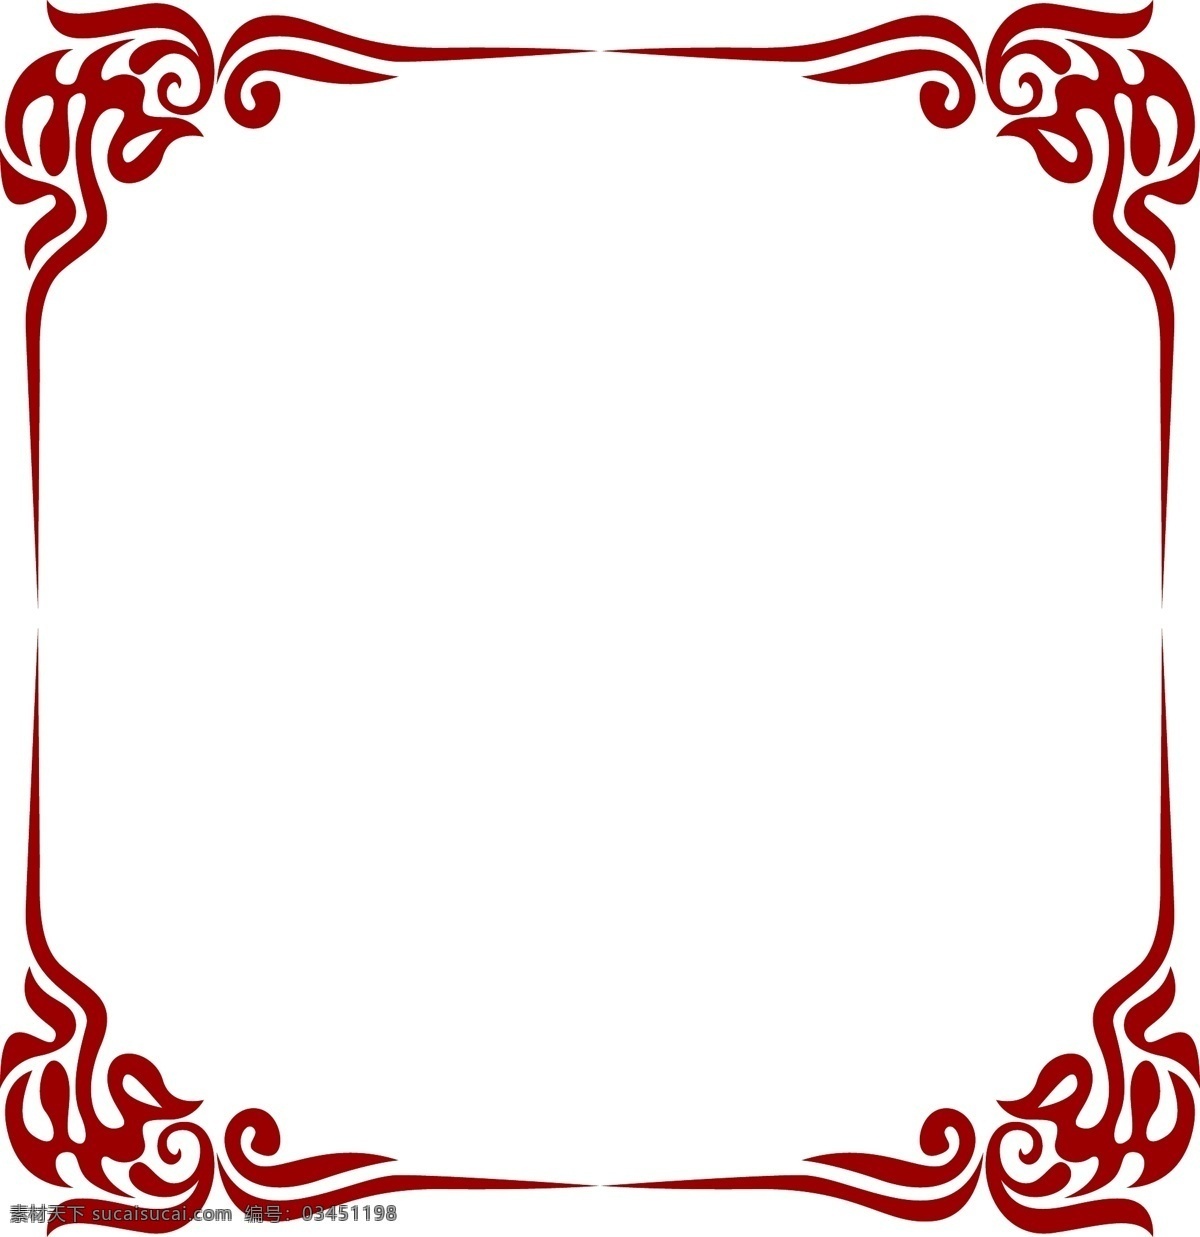 红色 中 国风 传统 边框 装饰 平面设计 原创 透明底 免抠 节日 海报装饰 清新 通用 卡通 小清新 中国风 文字边框